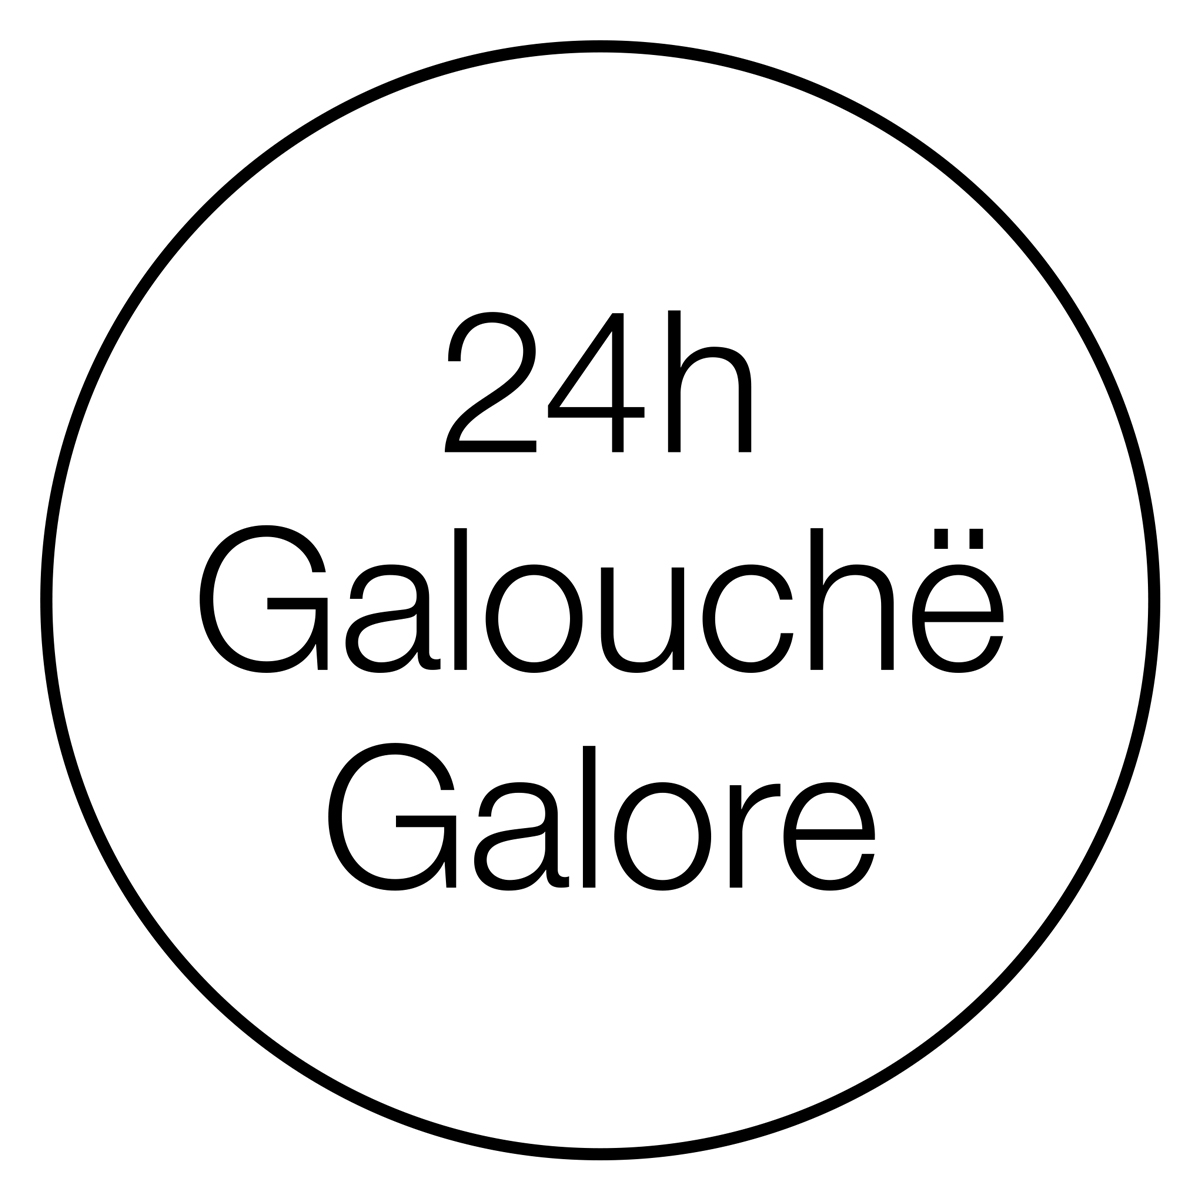 Galouchë Galore